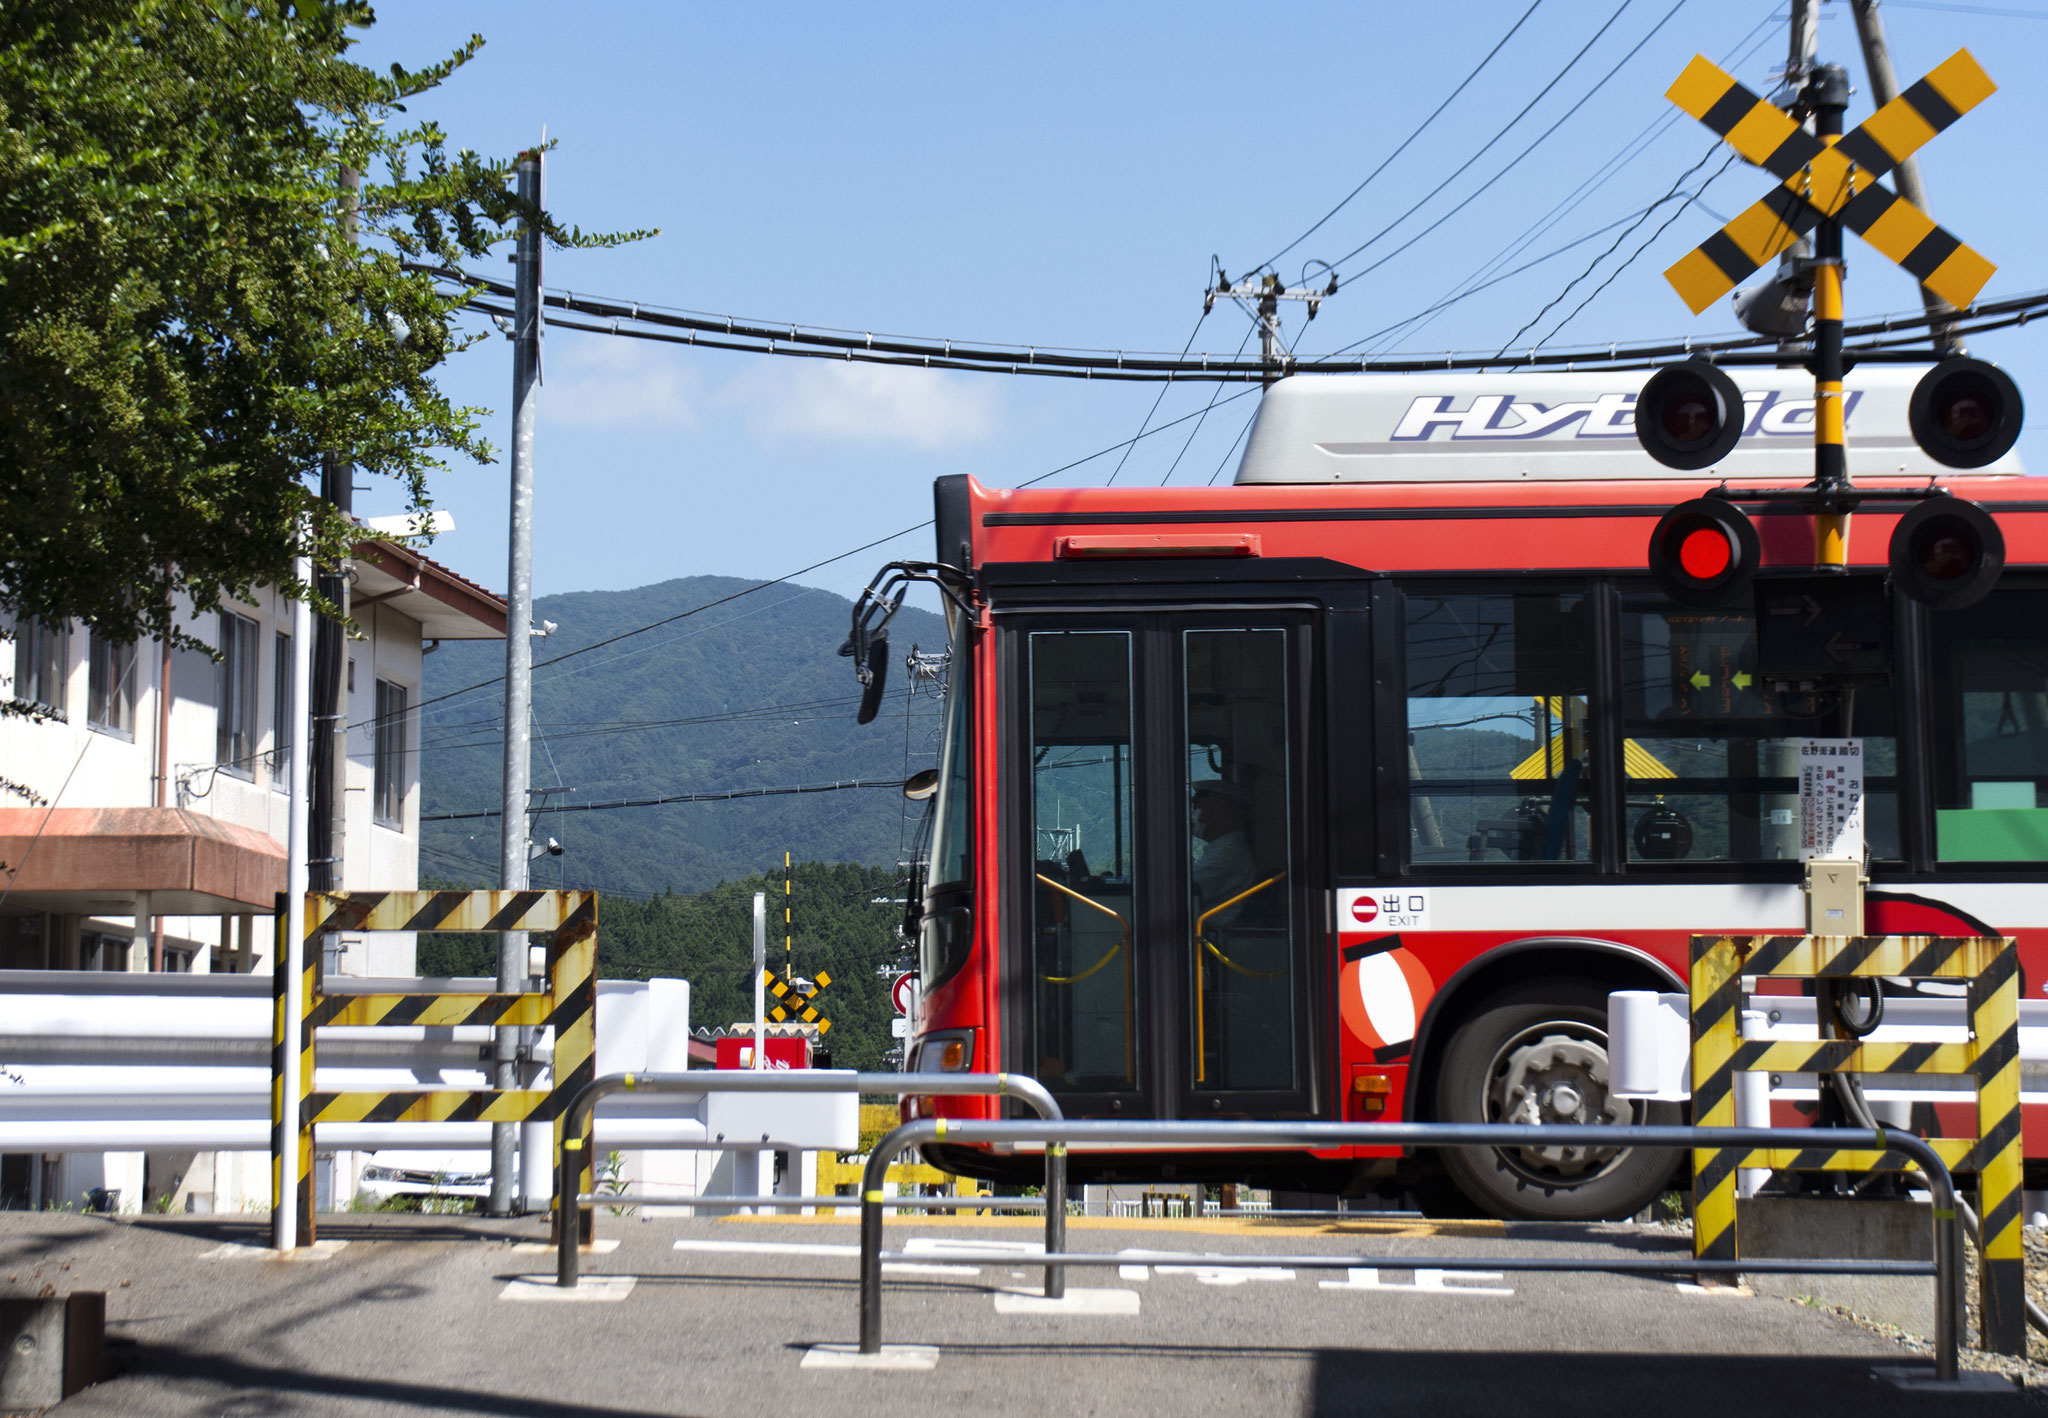 東日本大震災の津波の被害を受けた一部路線はBRTと呼ばれるバスに転換された。 BRTは専用道を走るため、踏切をバスが通過するという不思議な光景が見られる。岩手県大船渡市